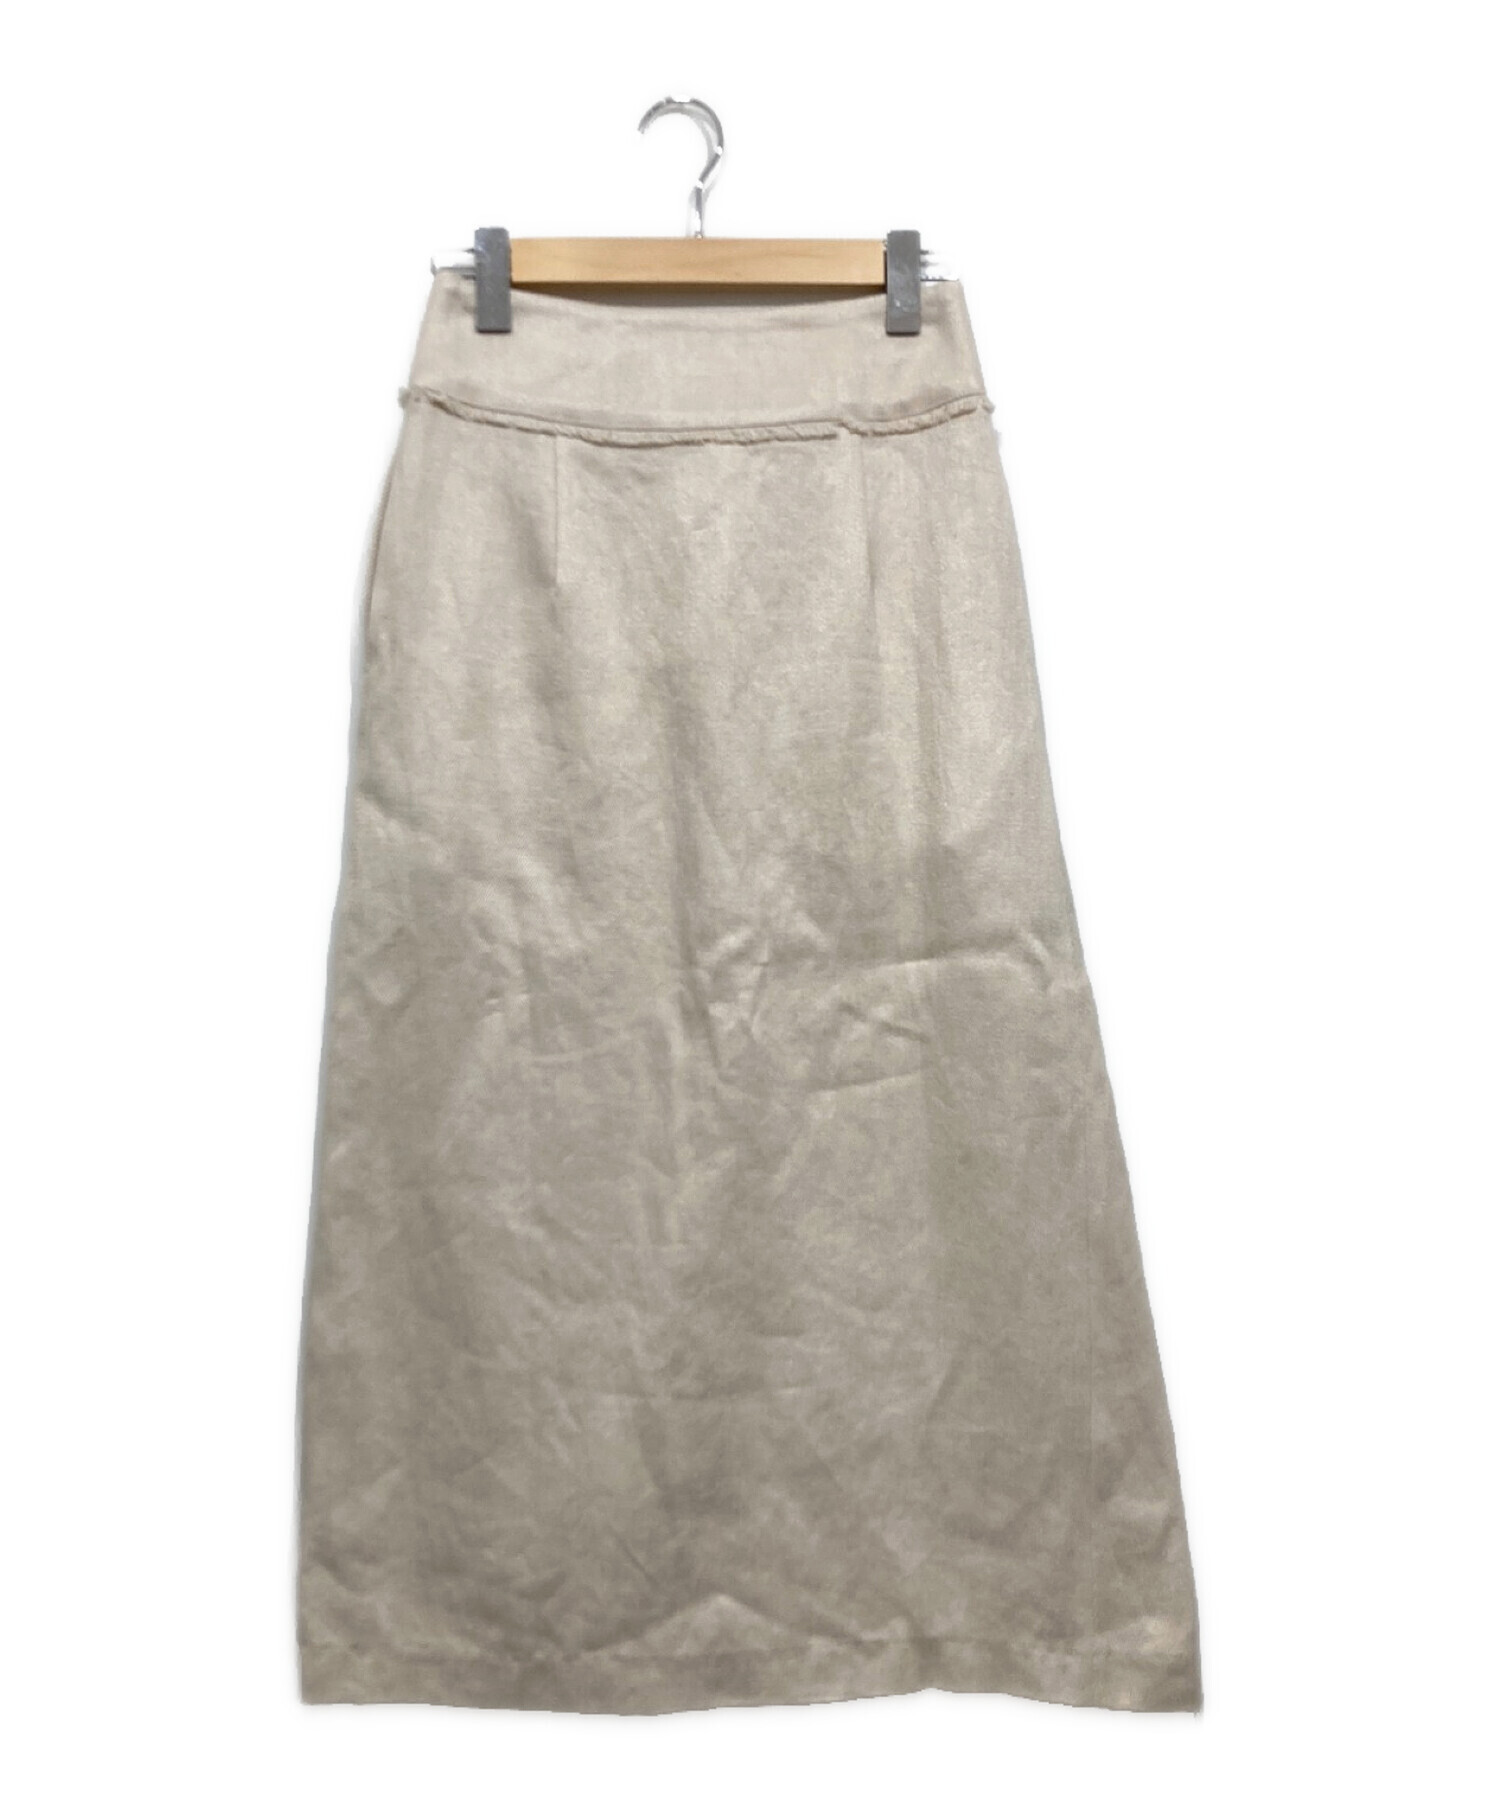 ebure (エブール) Heavy Linen Skirt/フリンジリネンロングスカート アイボリー サイズ:36